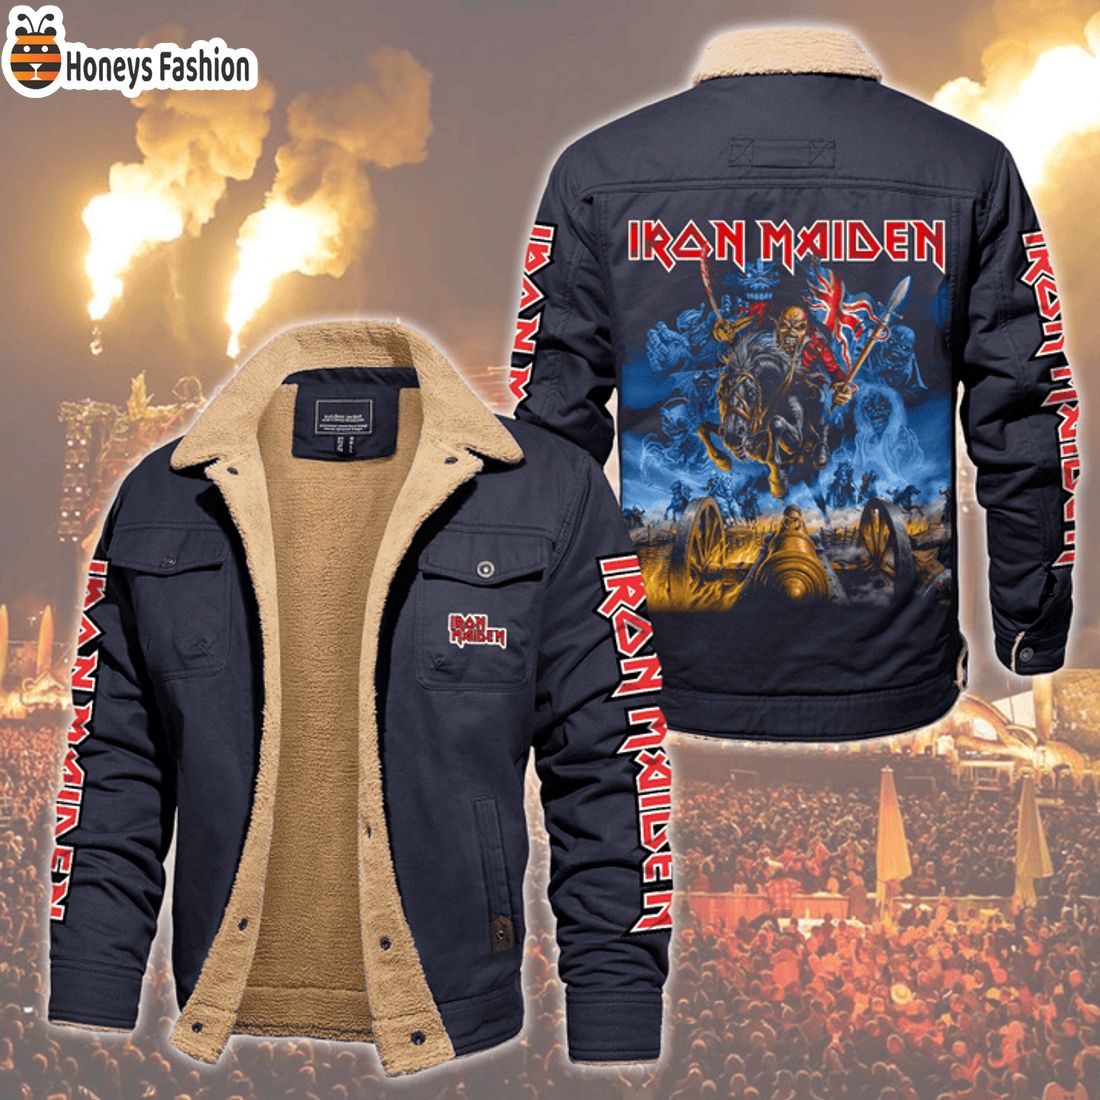 HOT Iron Maiden Zombies Illustration Fleece Leather Jacket